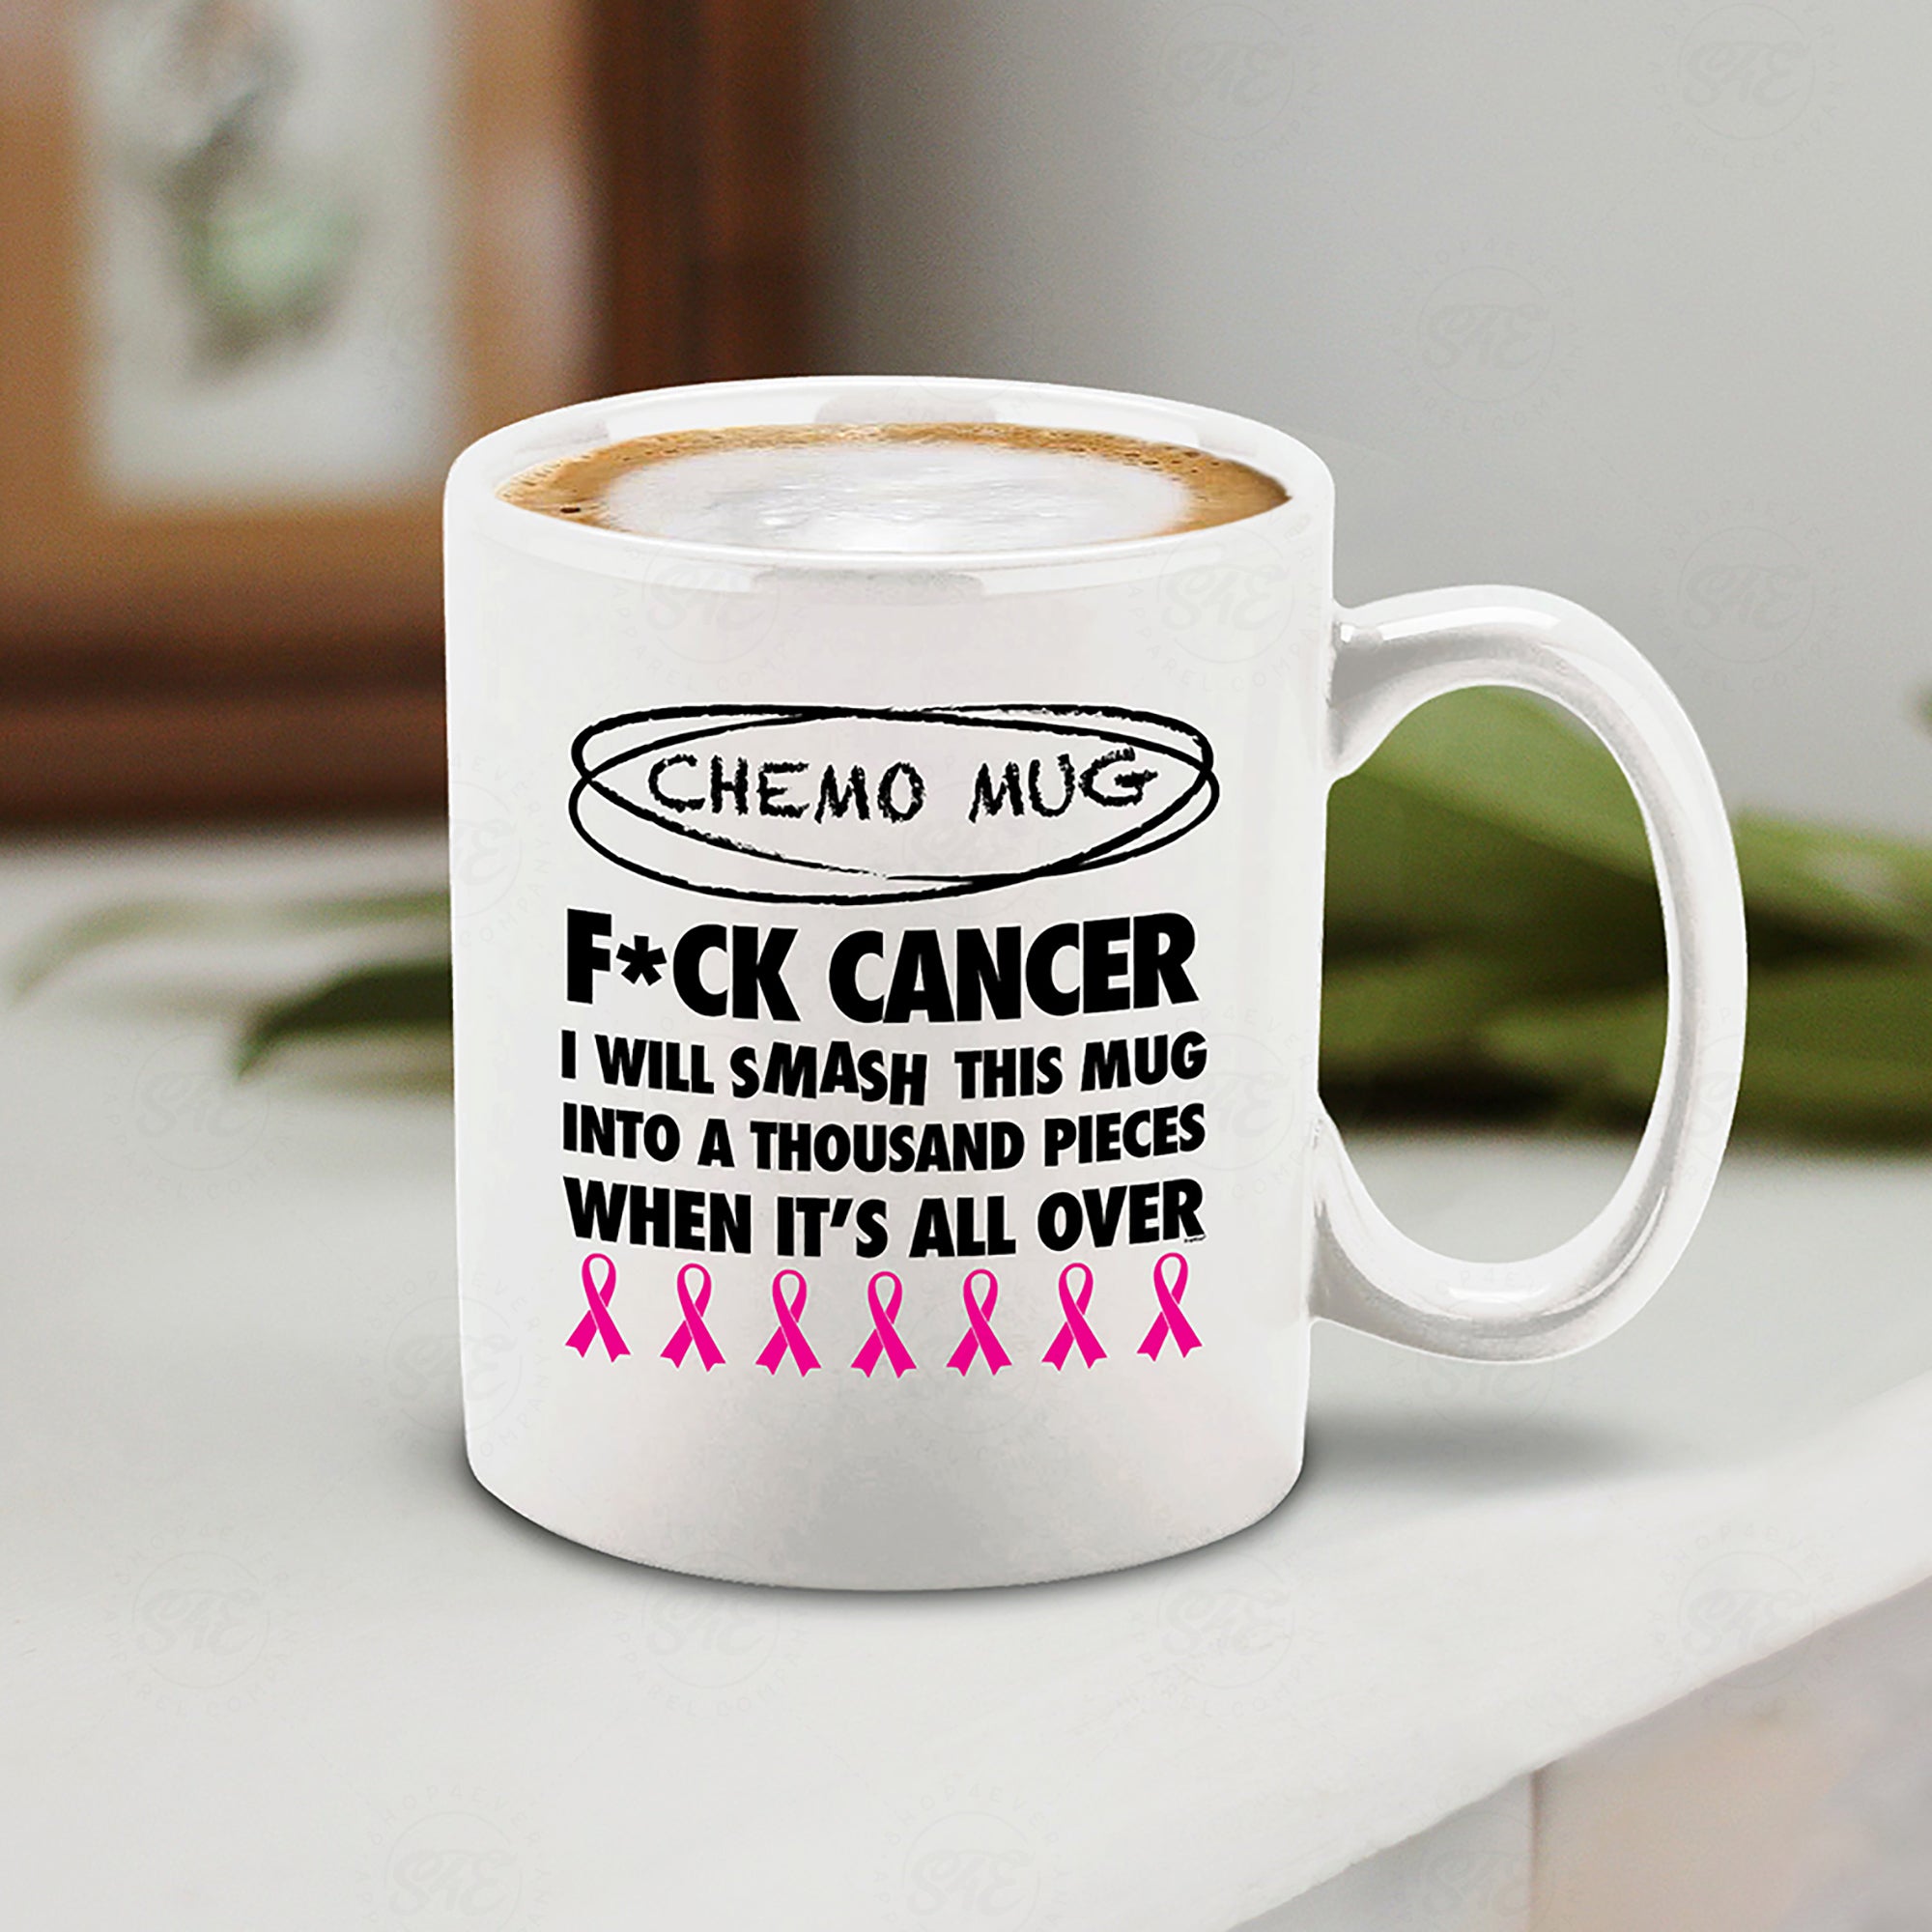 Chemo Mug I Will Smash This Mug Into a Thousand Pieces When It's All Over Ceramic Coffee Mug (White, 11 oz.)